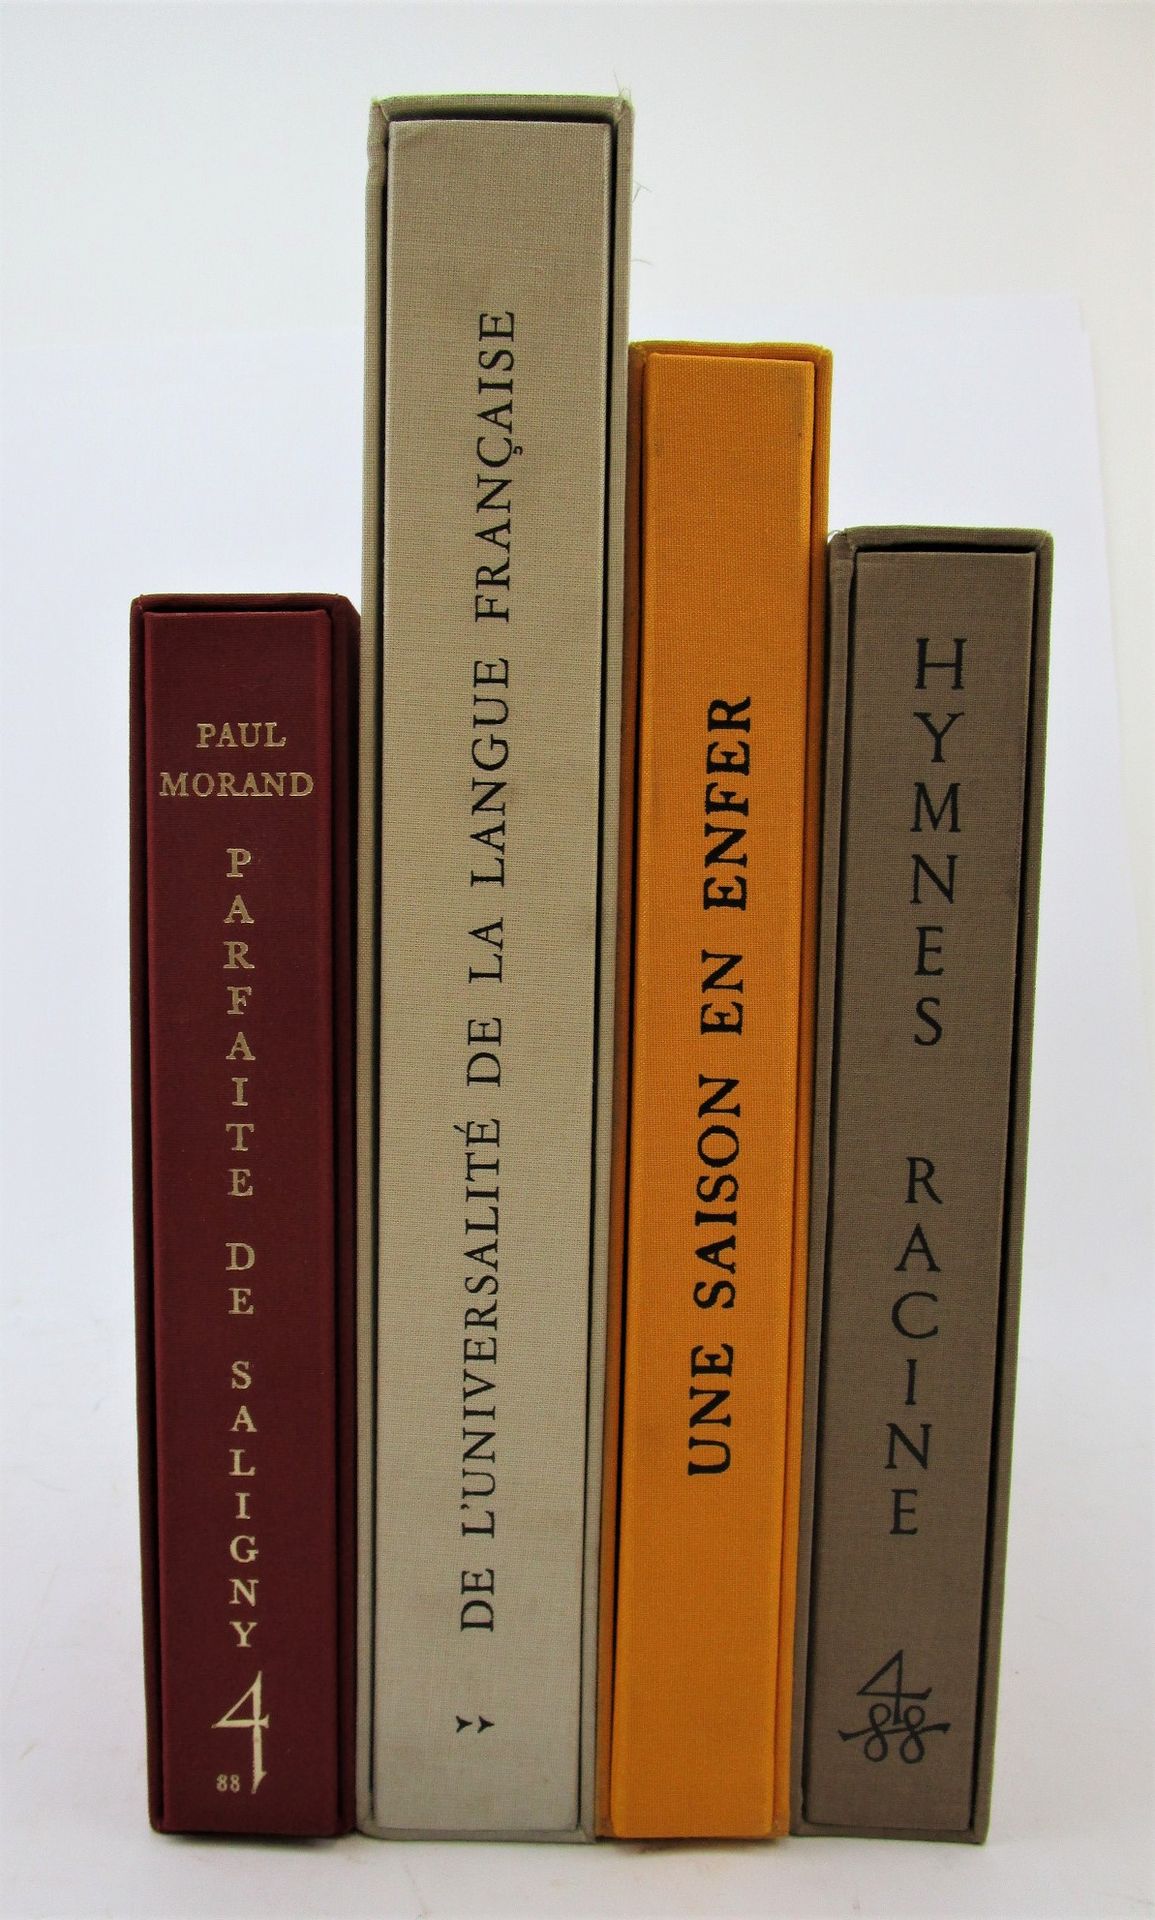 Null (La Compagnie Typographique) - Juego de 4 volúmenes.
1/Morand, Paul. - Parf&hellip;